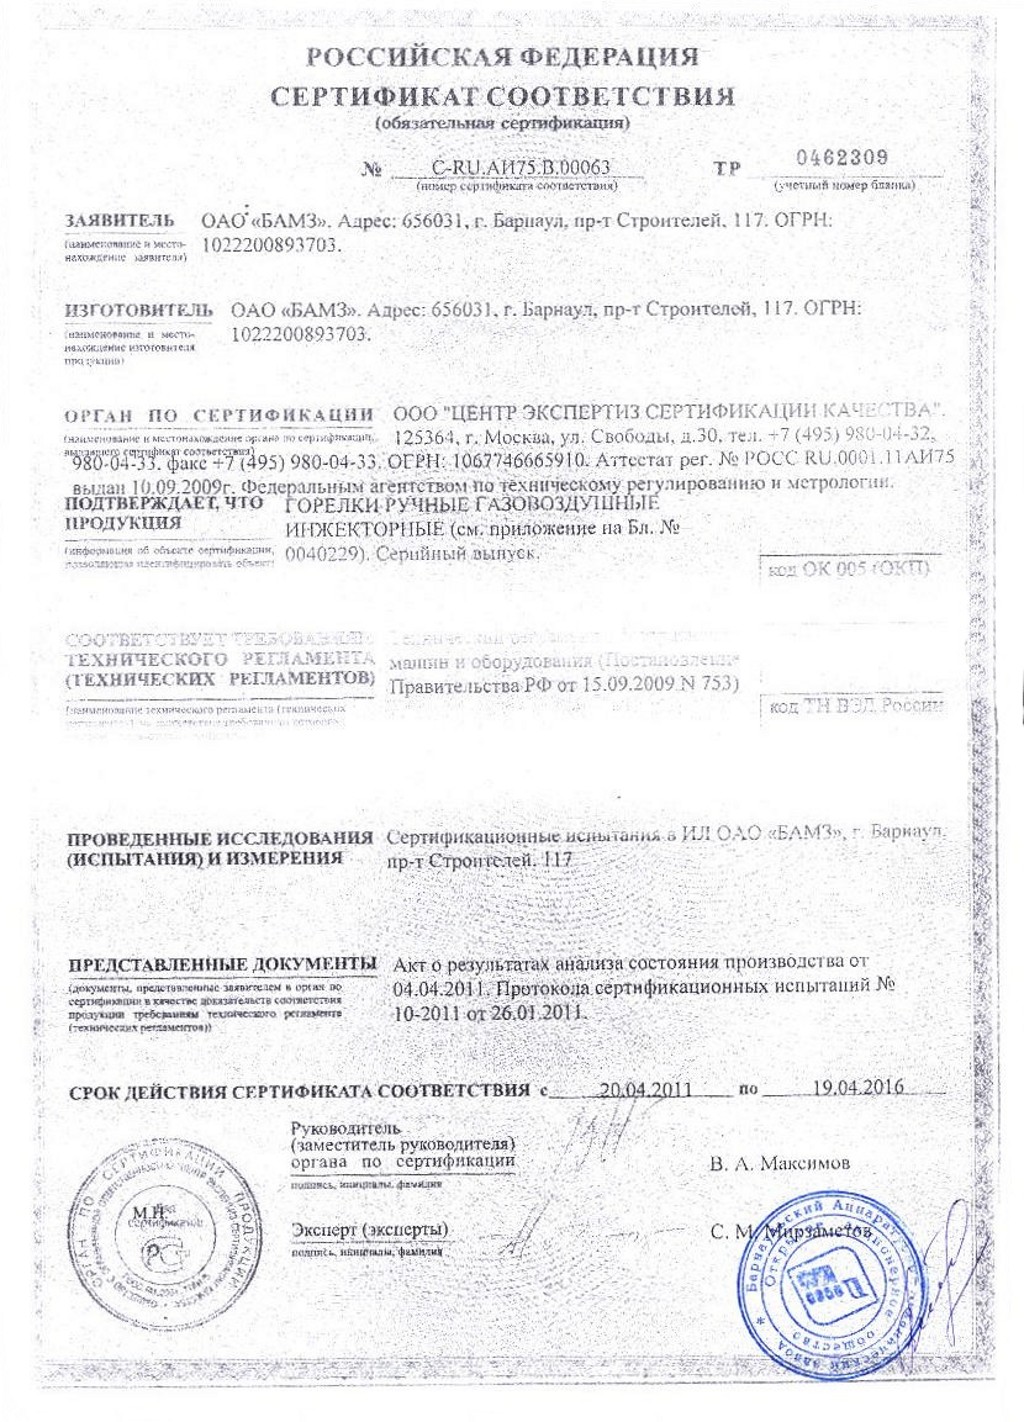 Сертификат на горелки ГВМ-1